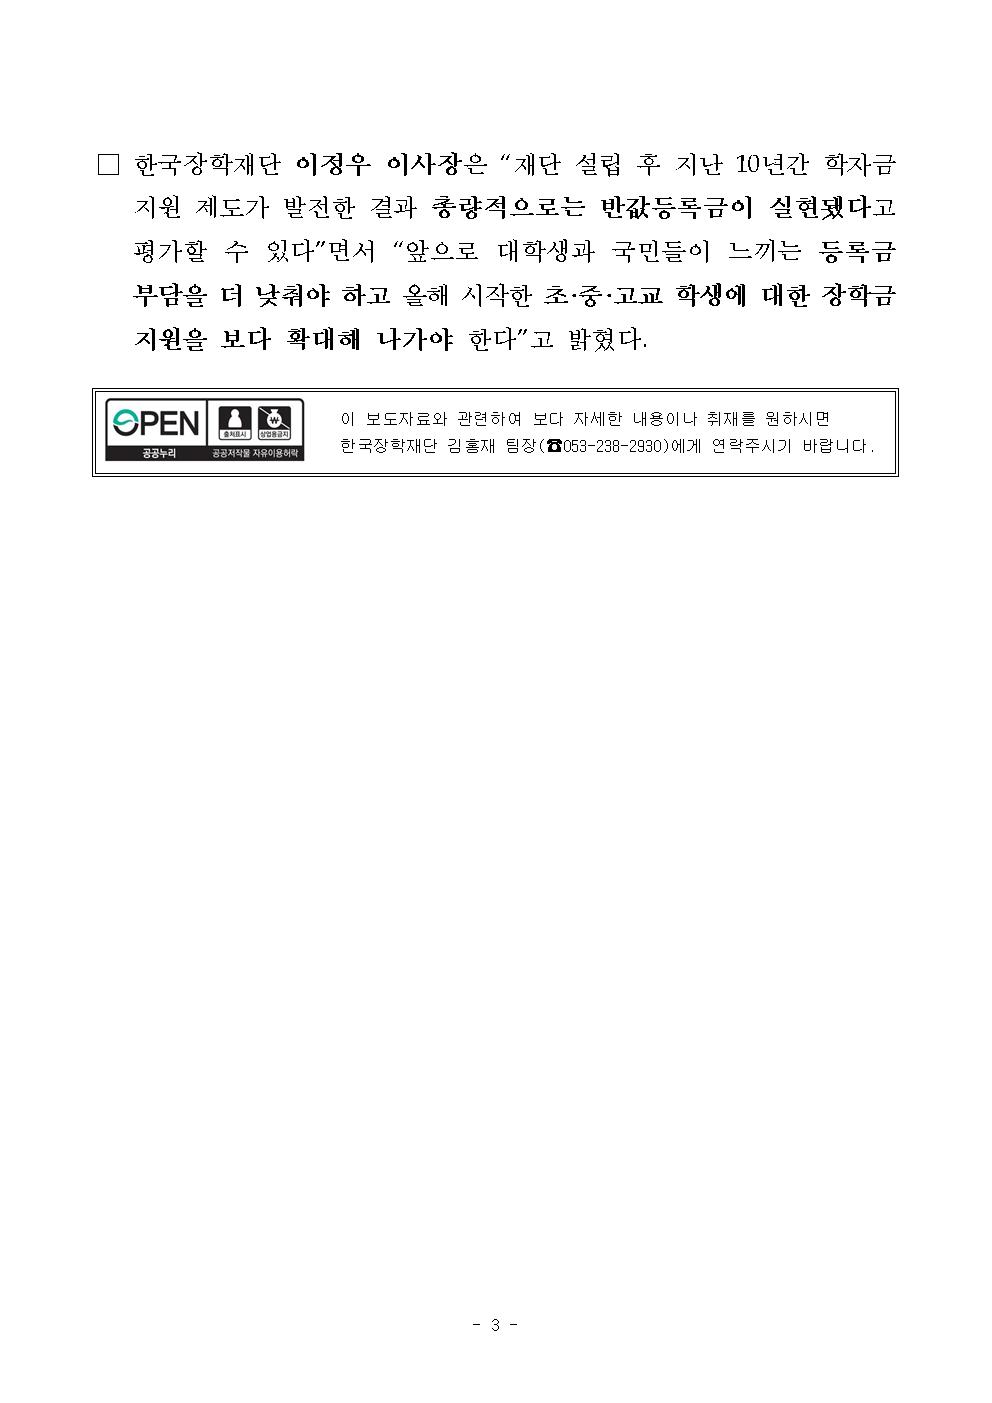 05-27(월)[보도자료] 한국장학재단 창립 10주년 심포지엄 보도자료003.jpg